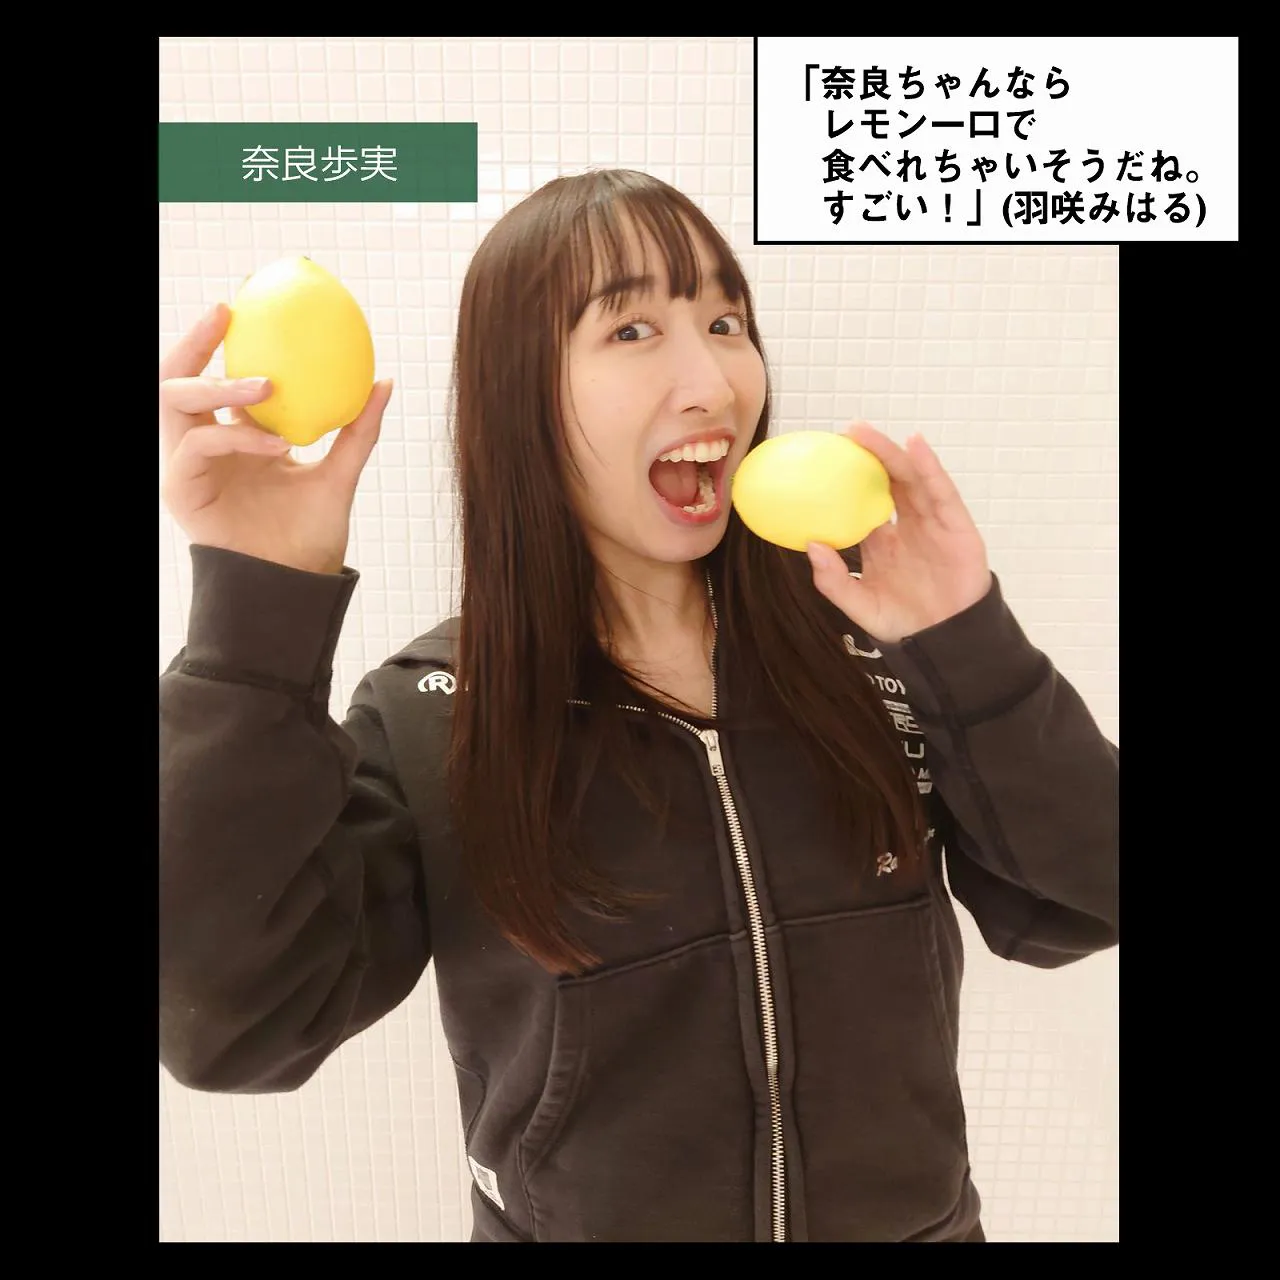 「奈良ちゃんならレモン一口で食べれちゃいそうだね。すごい！」(羽咲みはる)